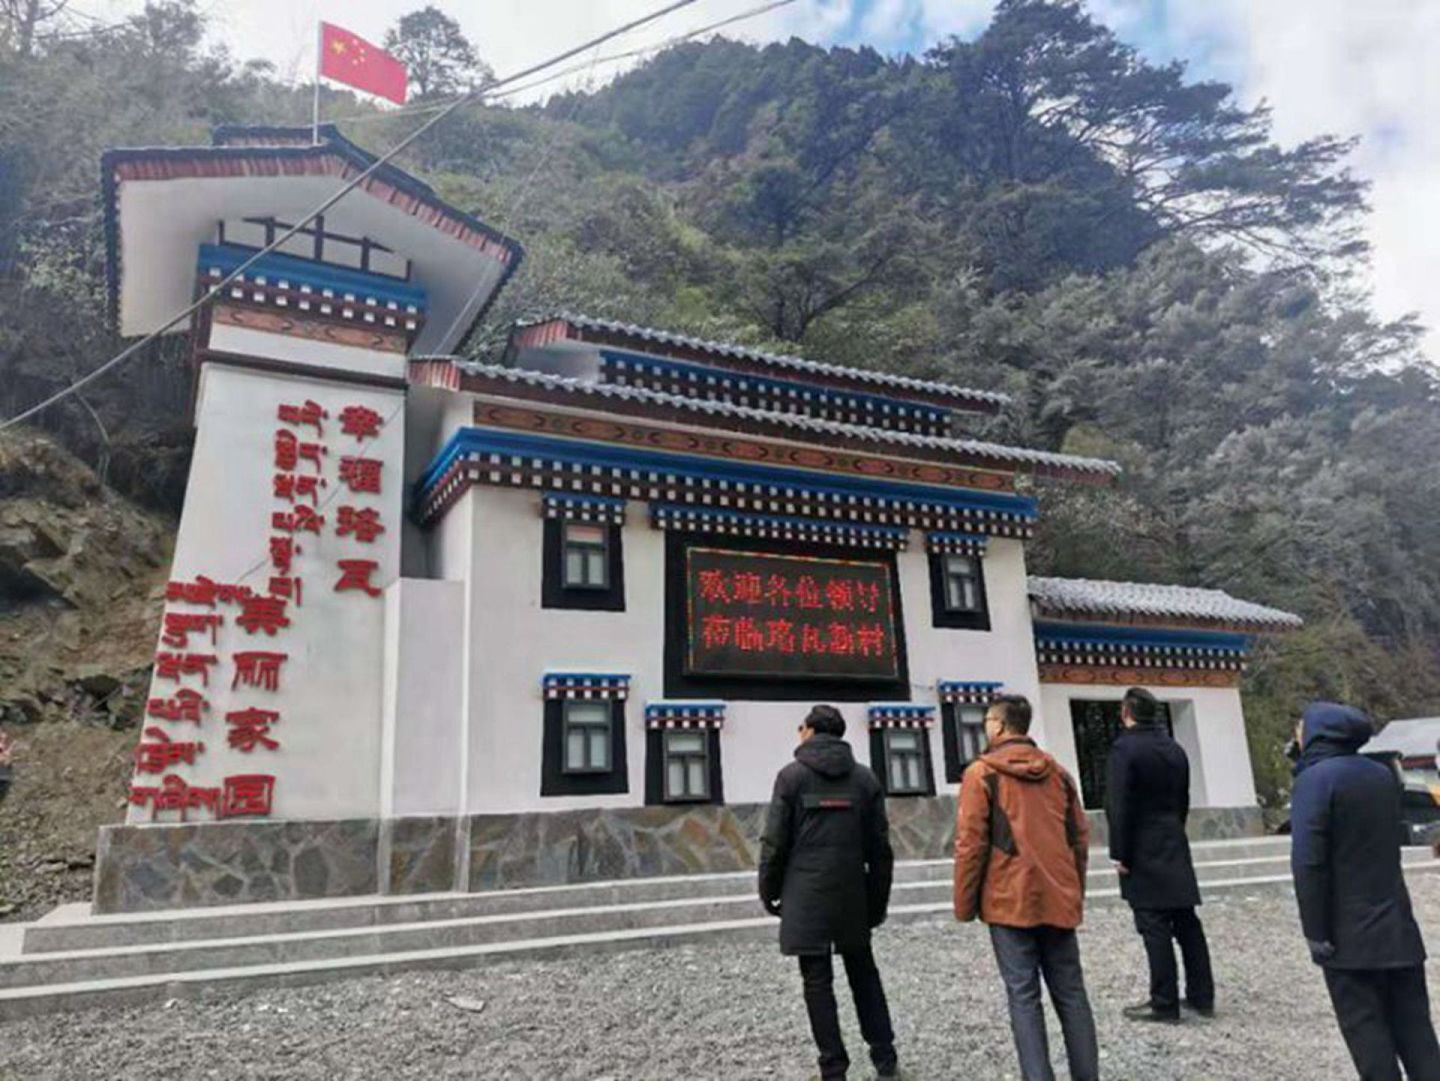 西藏易境旅游景观规划设计院承接的珞瓦新村项目于2020年12月17日落成。（微博@LQ、柏）